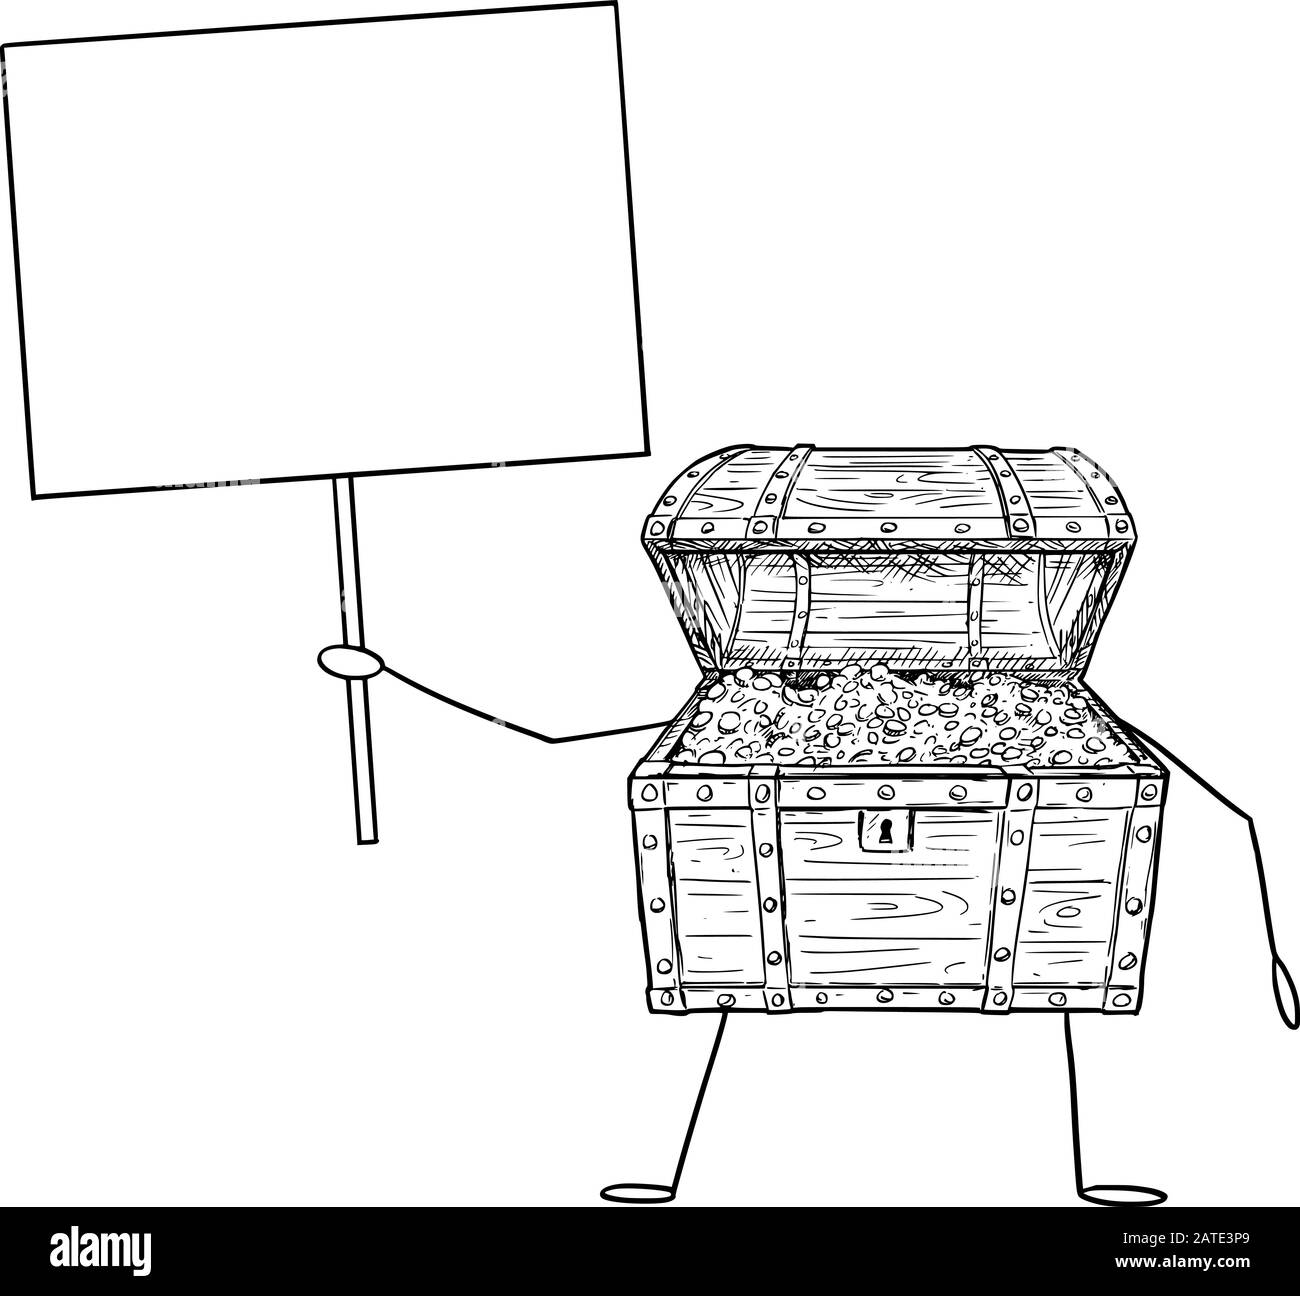 Vektor-Illustration des Cartoons offener Schatz Pirat Brustfigur voller Goldmünzen mit leerem Schild in der Hand. Wirtschafts- oder Finanzwerbung oder Marketingdesign. Stock Vektor